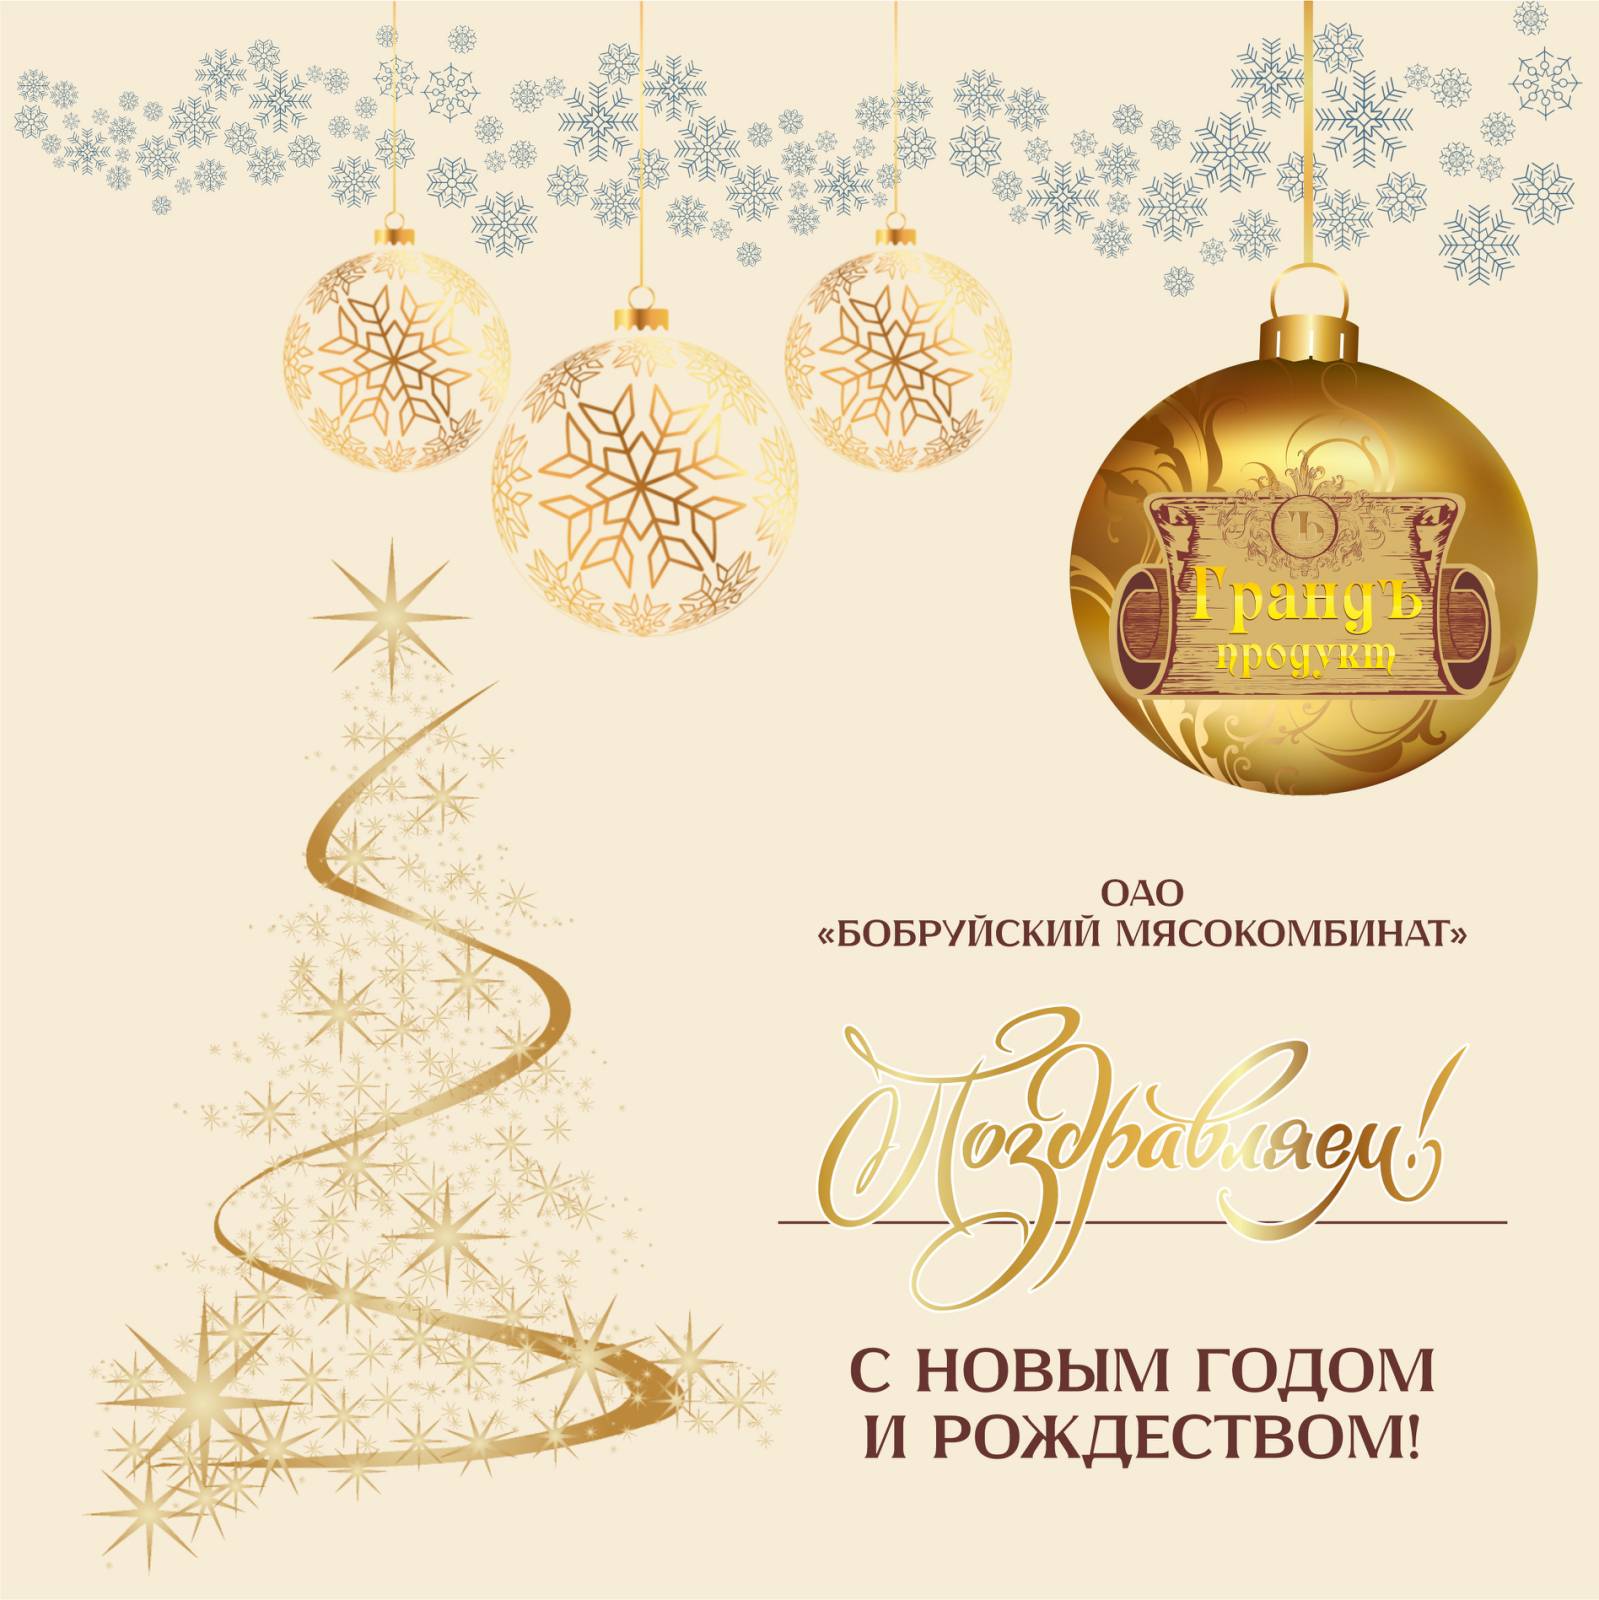 ОАО «Бобруйский мясокомбинат» поздравляет с наступающим Новым Годом и Рождеством!